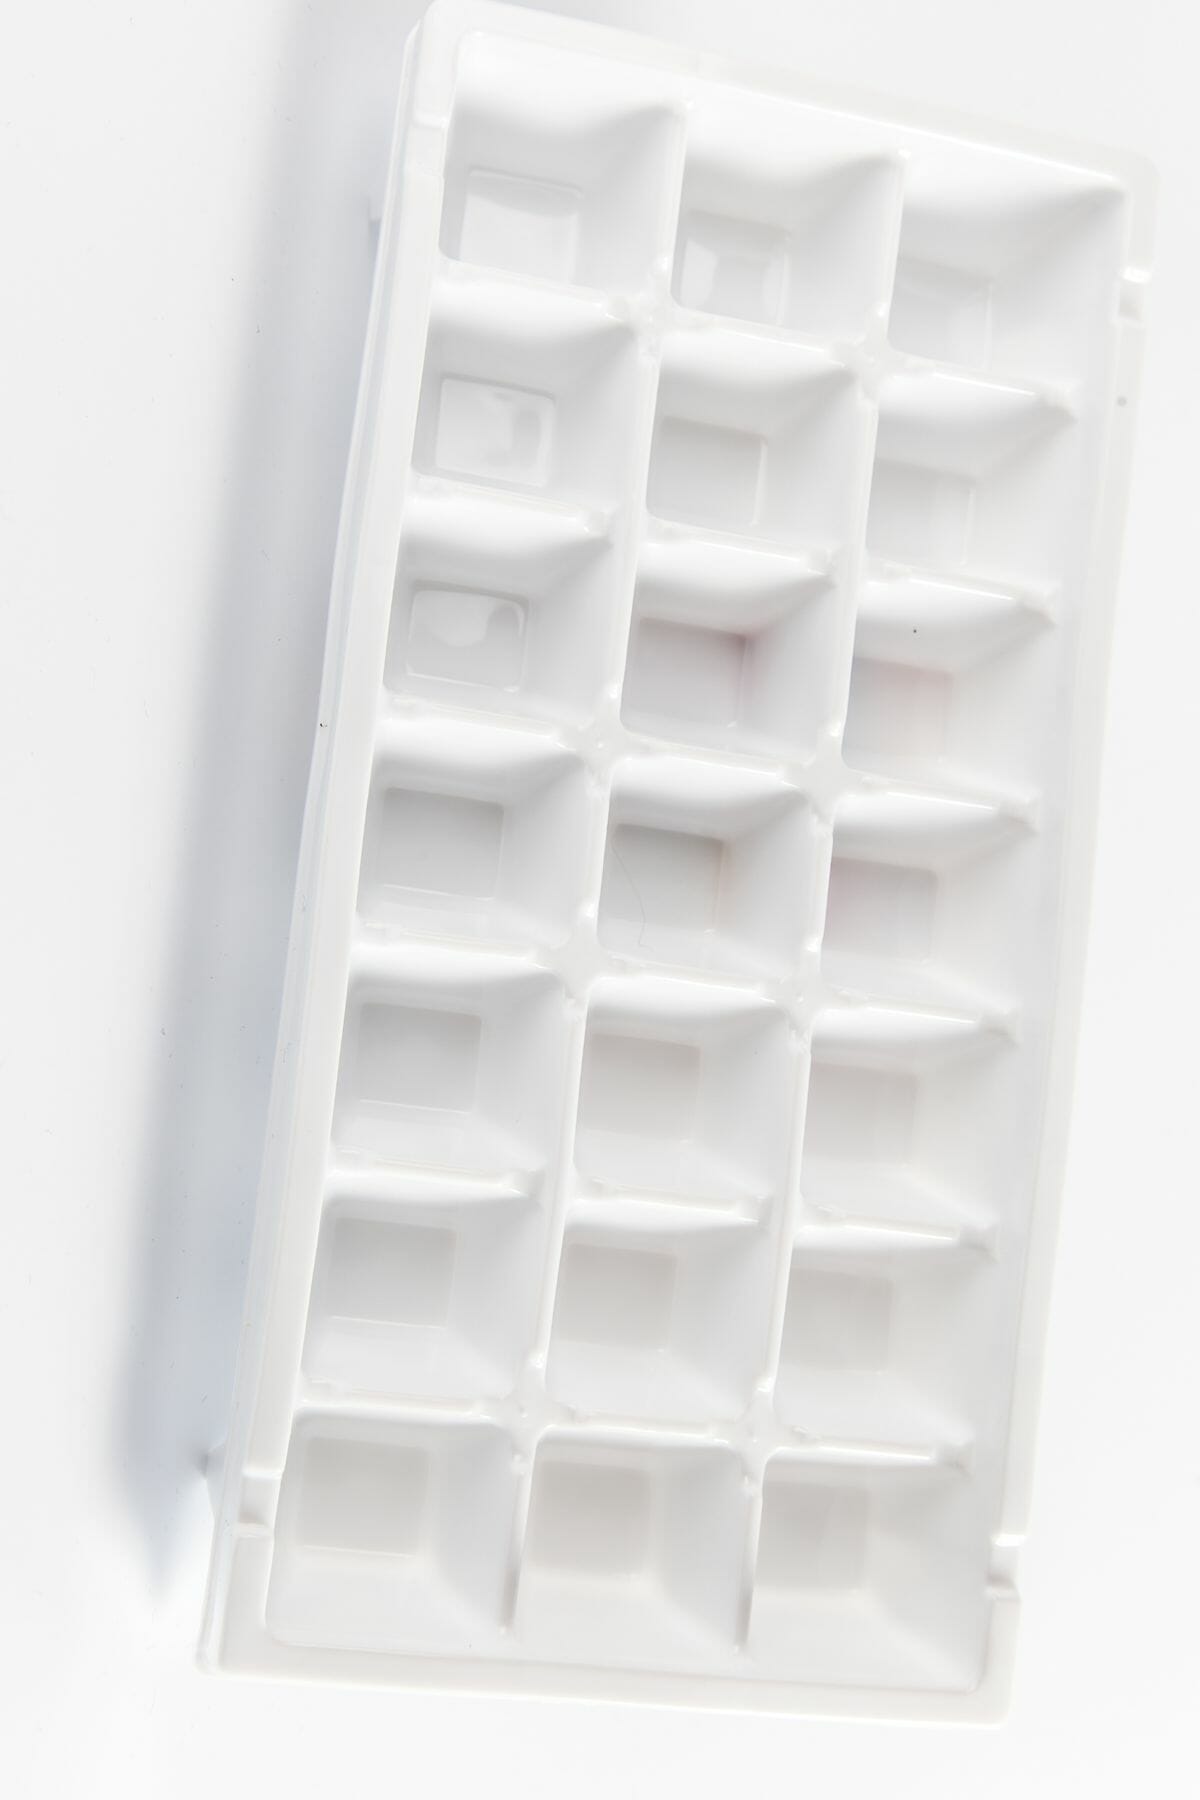 a ice cube tray